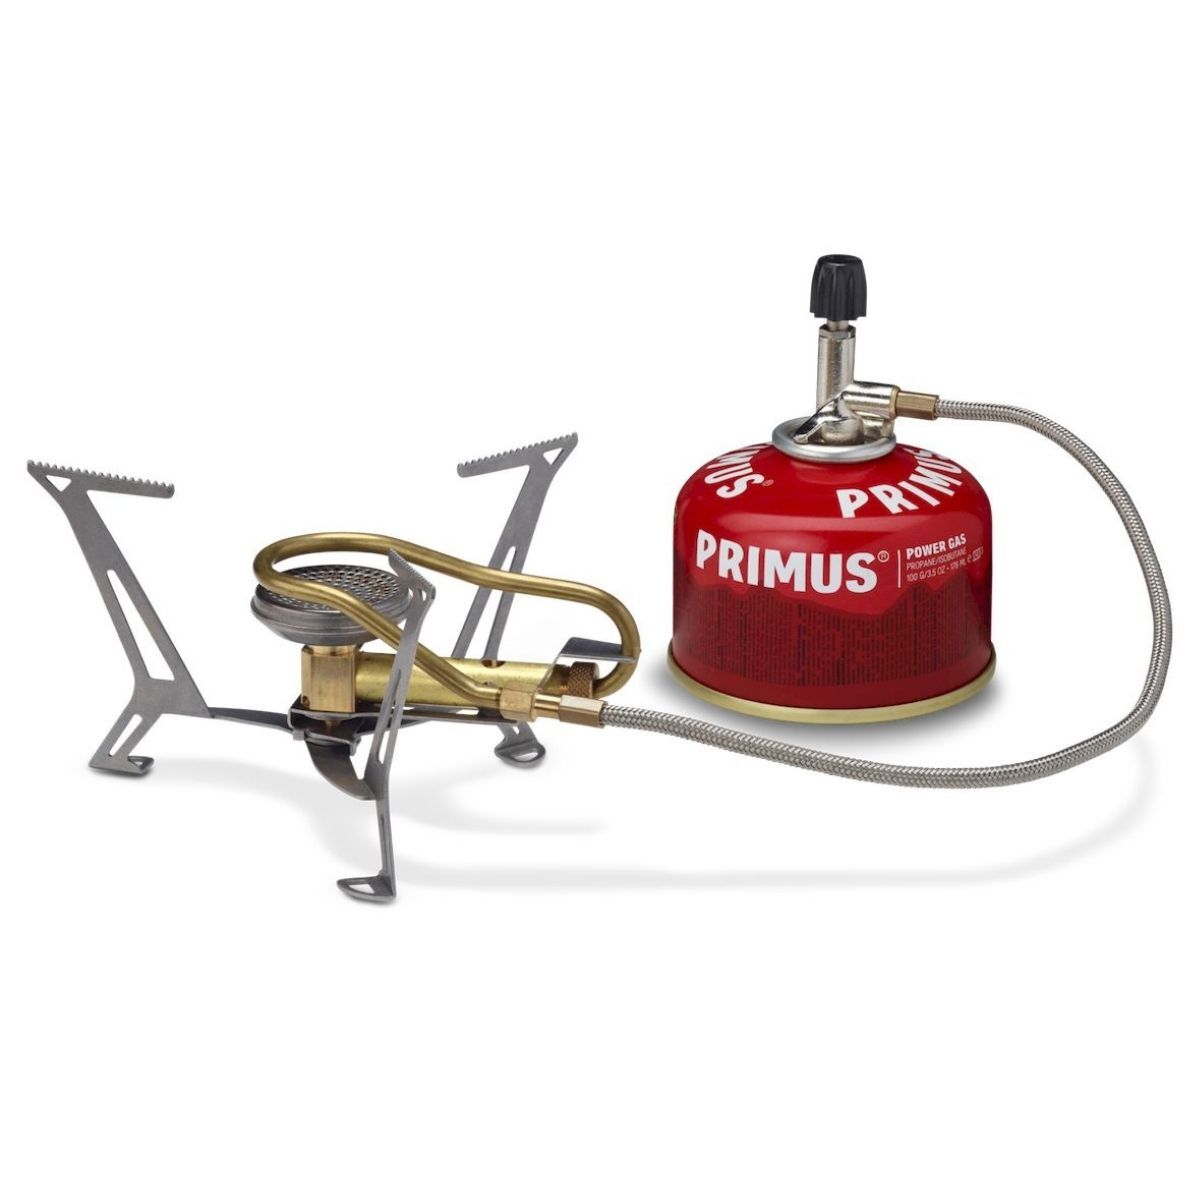 Primus Express Spider II - Fornello a gas